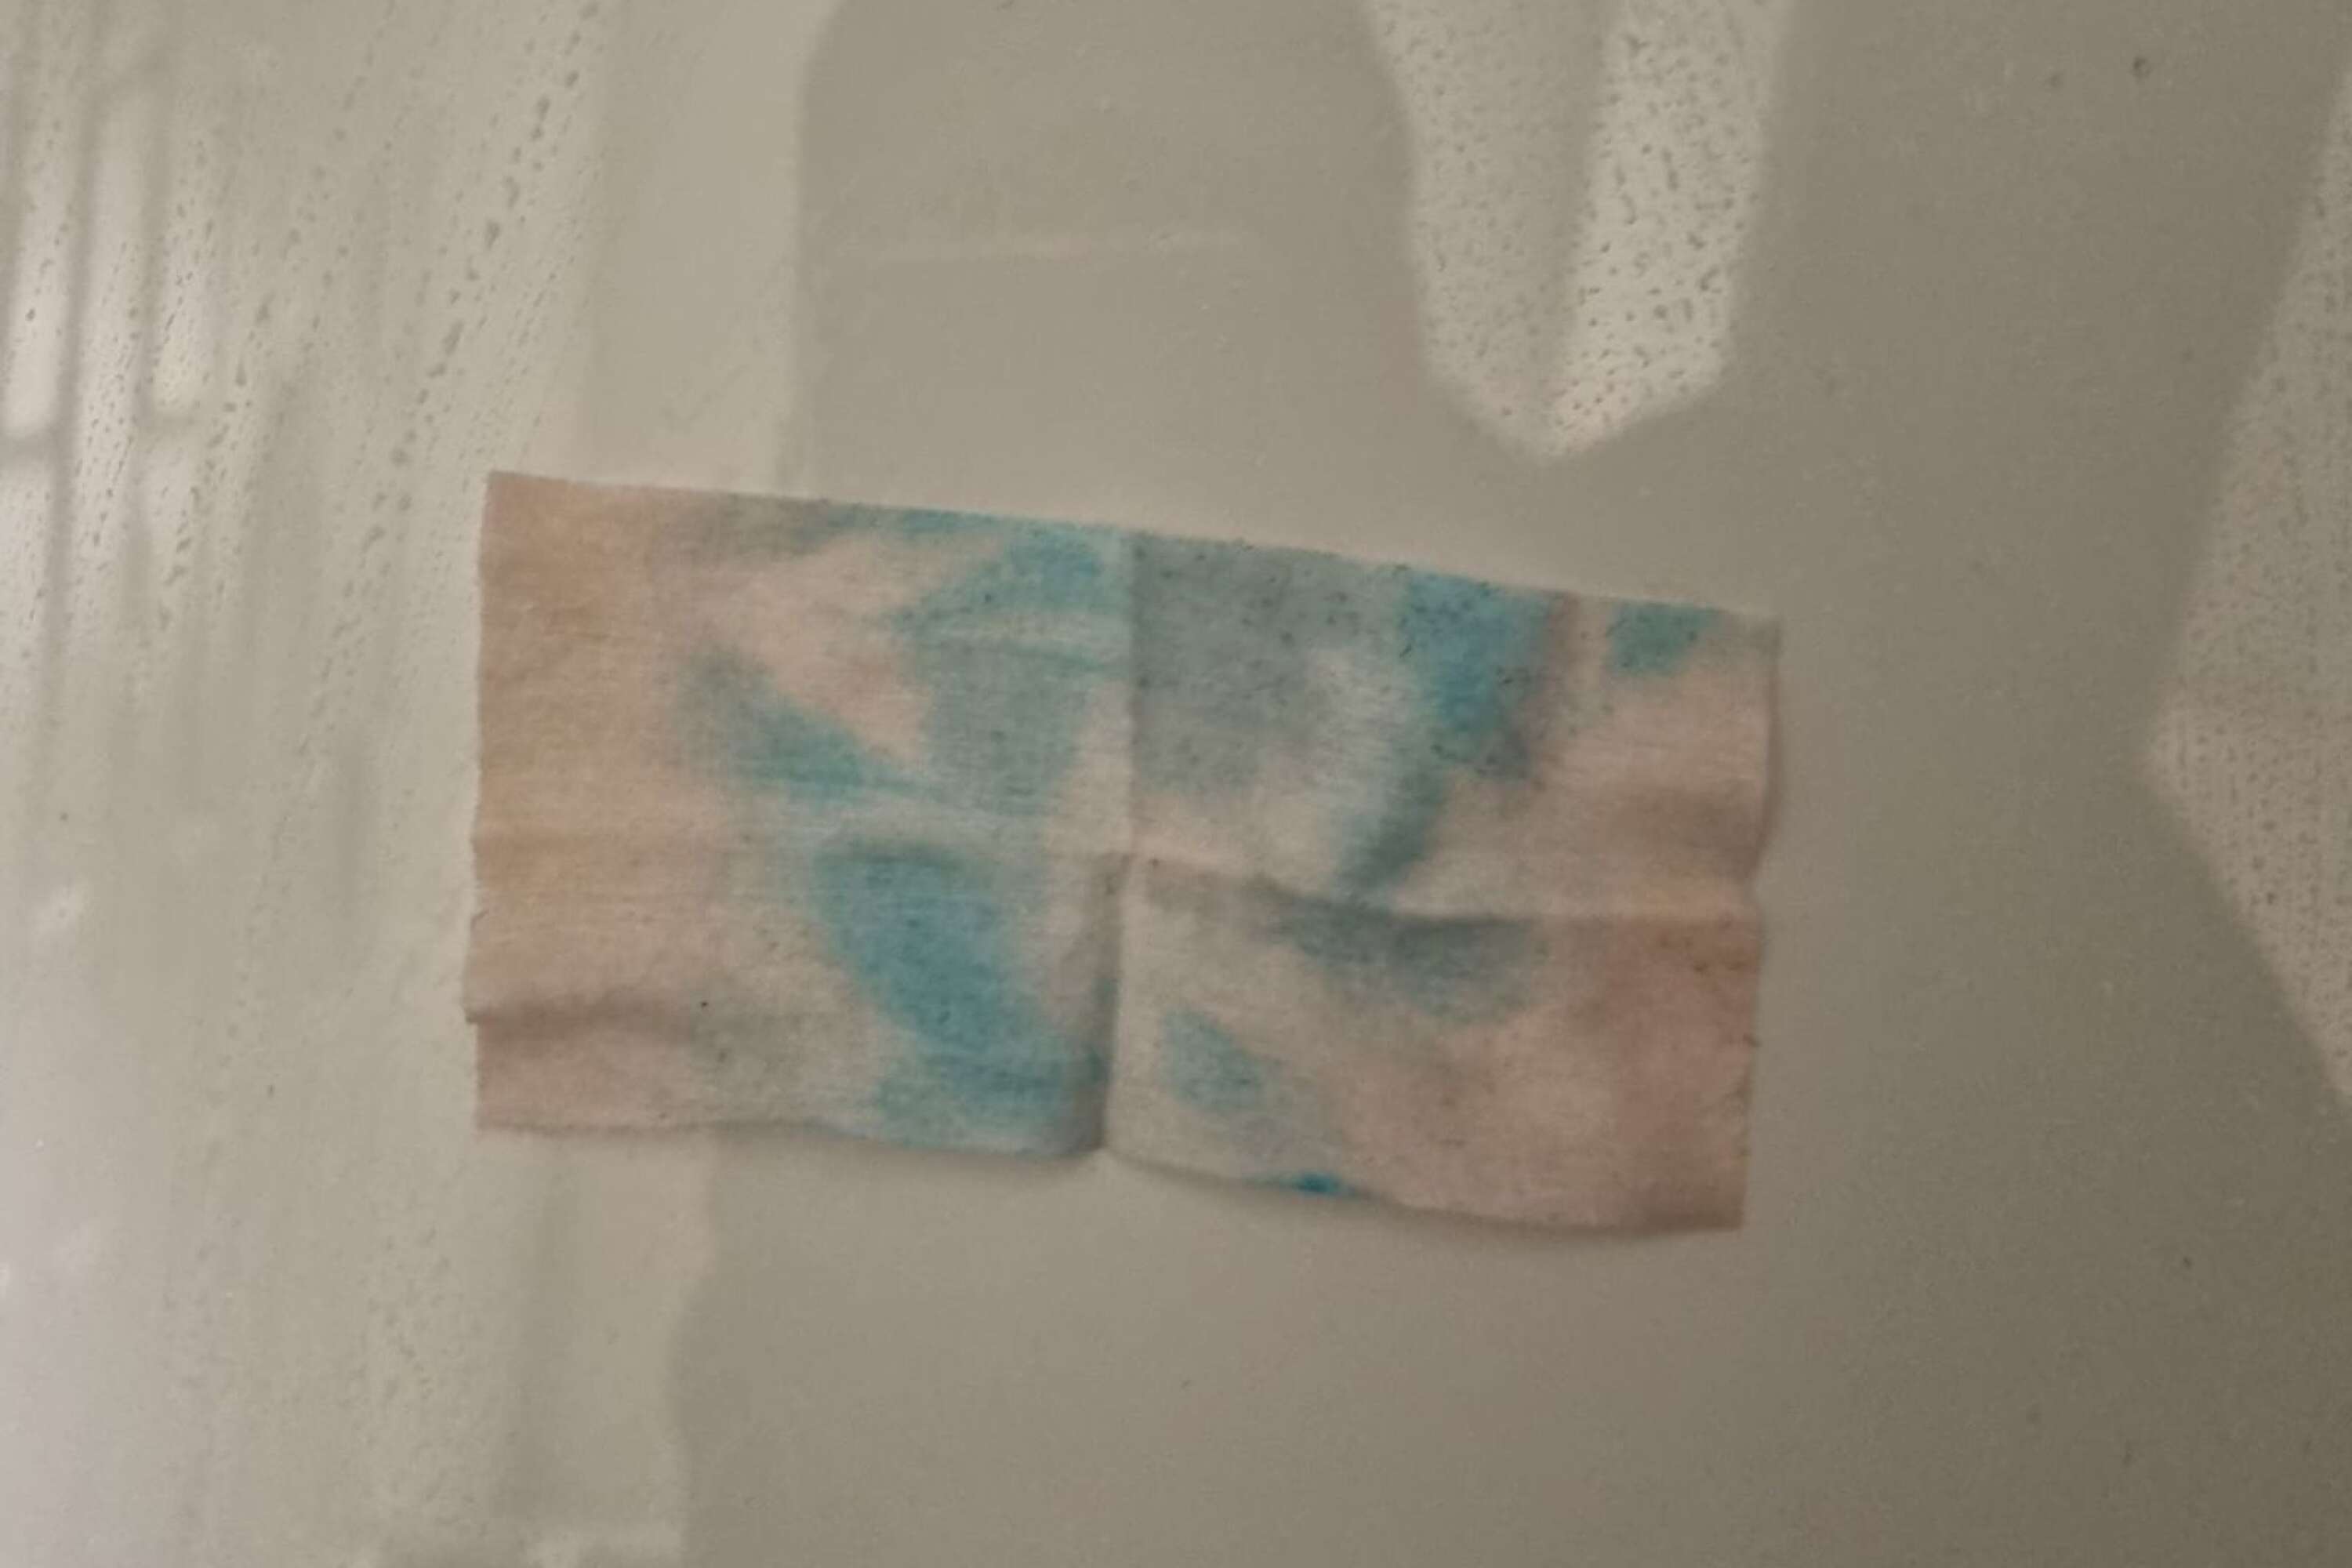 NWT använder särskilda servetter som är framtagna specifikt för att identifiera kokainspår. När det finns spår av kokain uppstår omedelbart blå fläckar på de rosa servetterna.